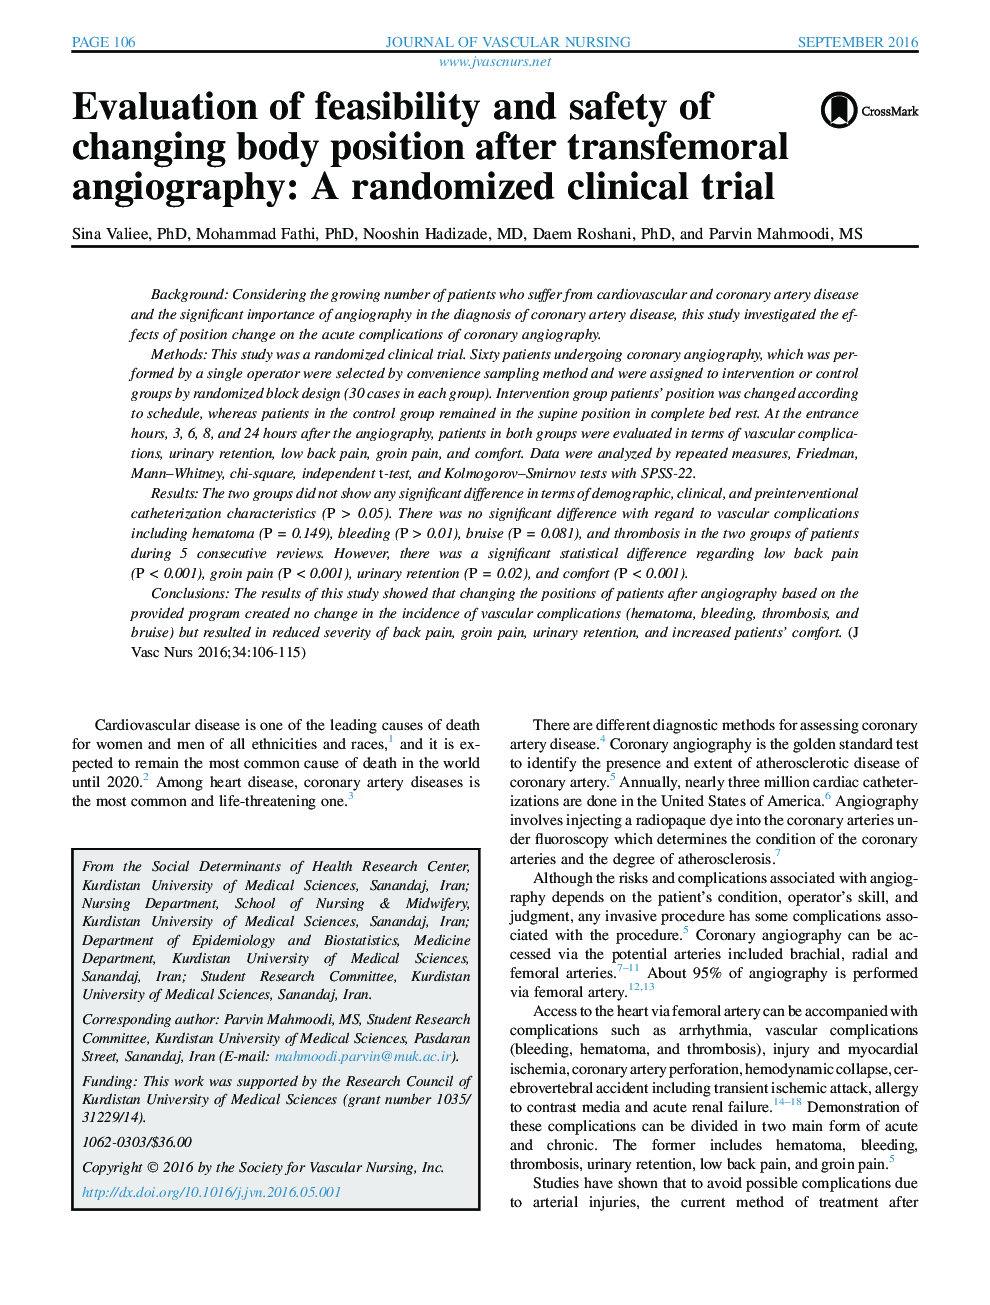 بررسی امکان سنجی و ایمنی تغییر موقعیت بدن بعد از آنژیوگرافی transfemoral: یک کارآزمایی بالینی تصادفی